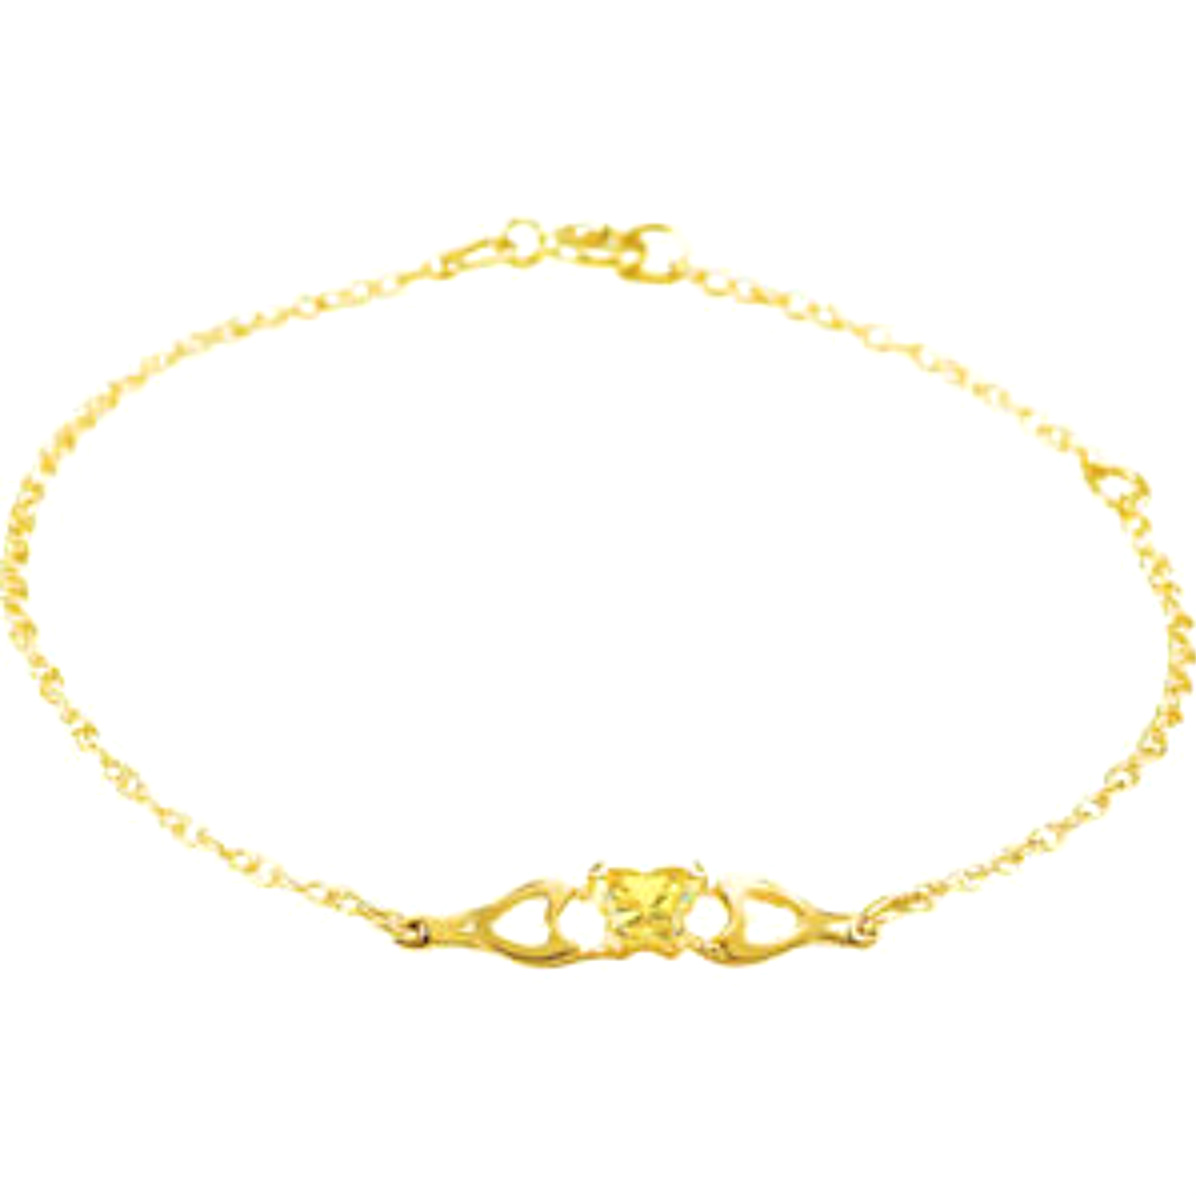 Girl's 'Bfly' November Birthstone Bracelet in 10k Yellow Gold, 4.1"